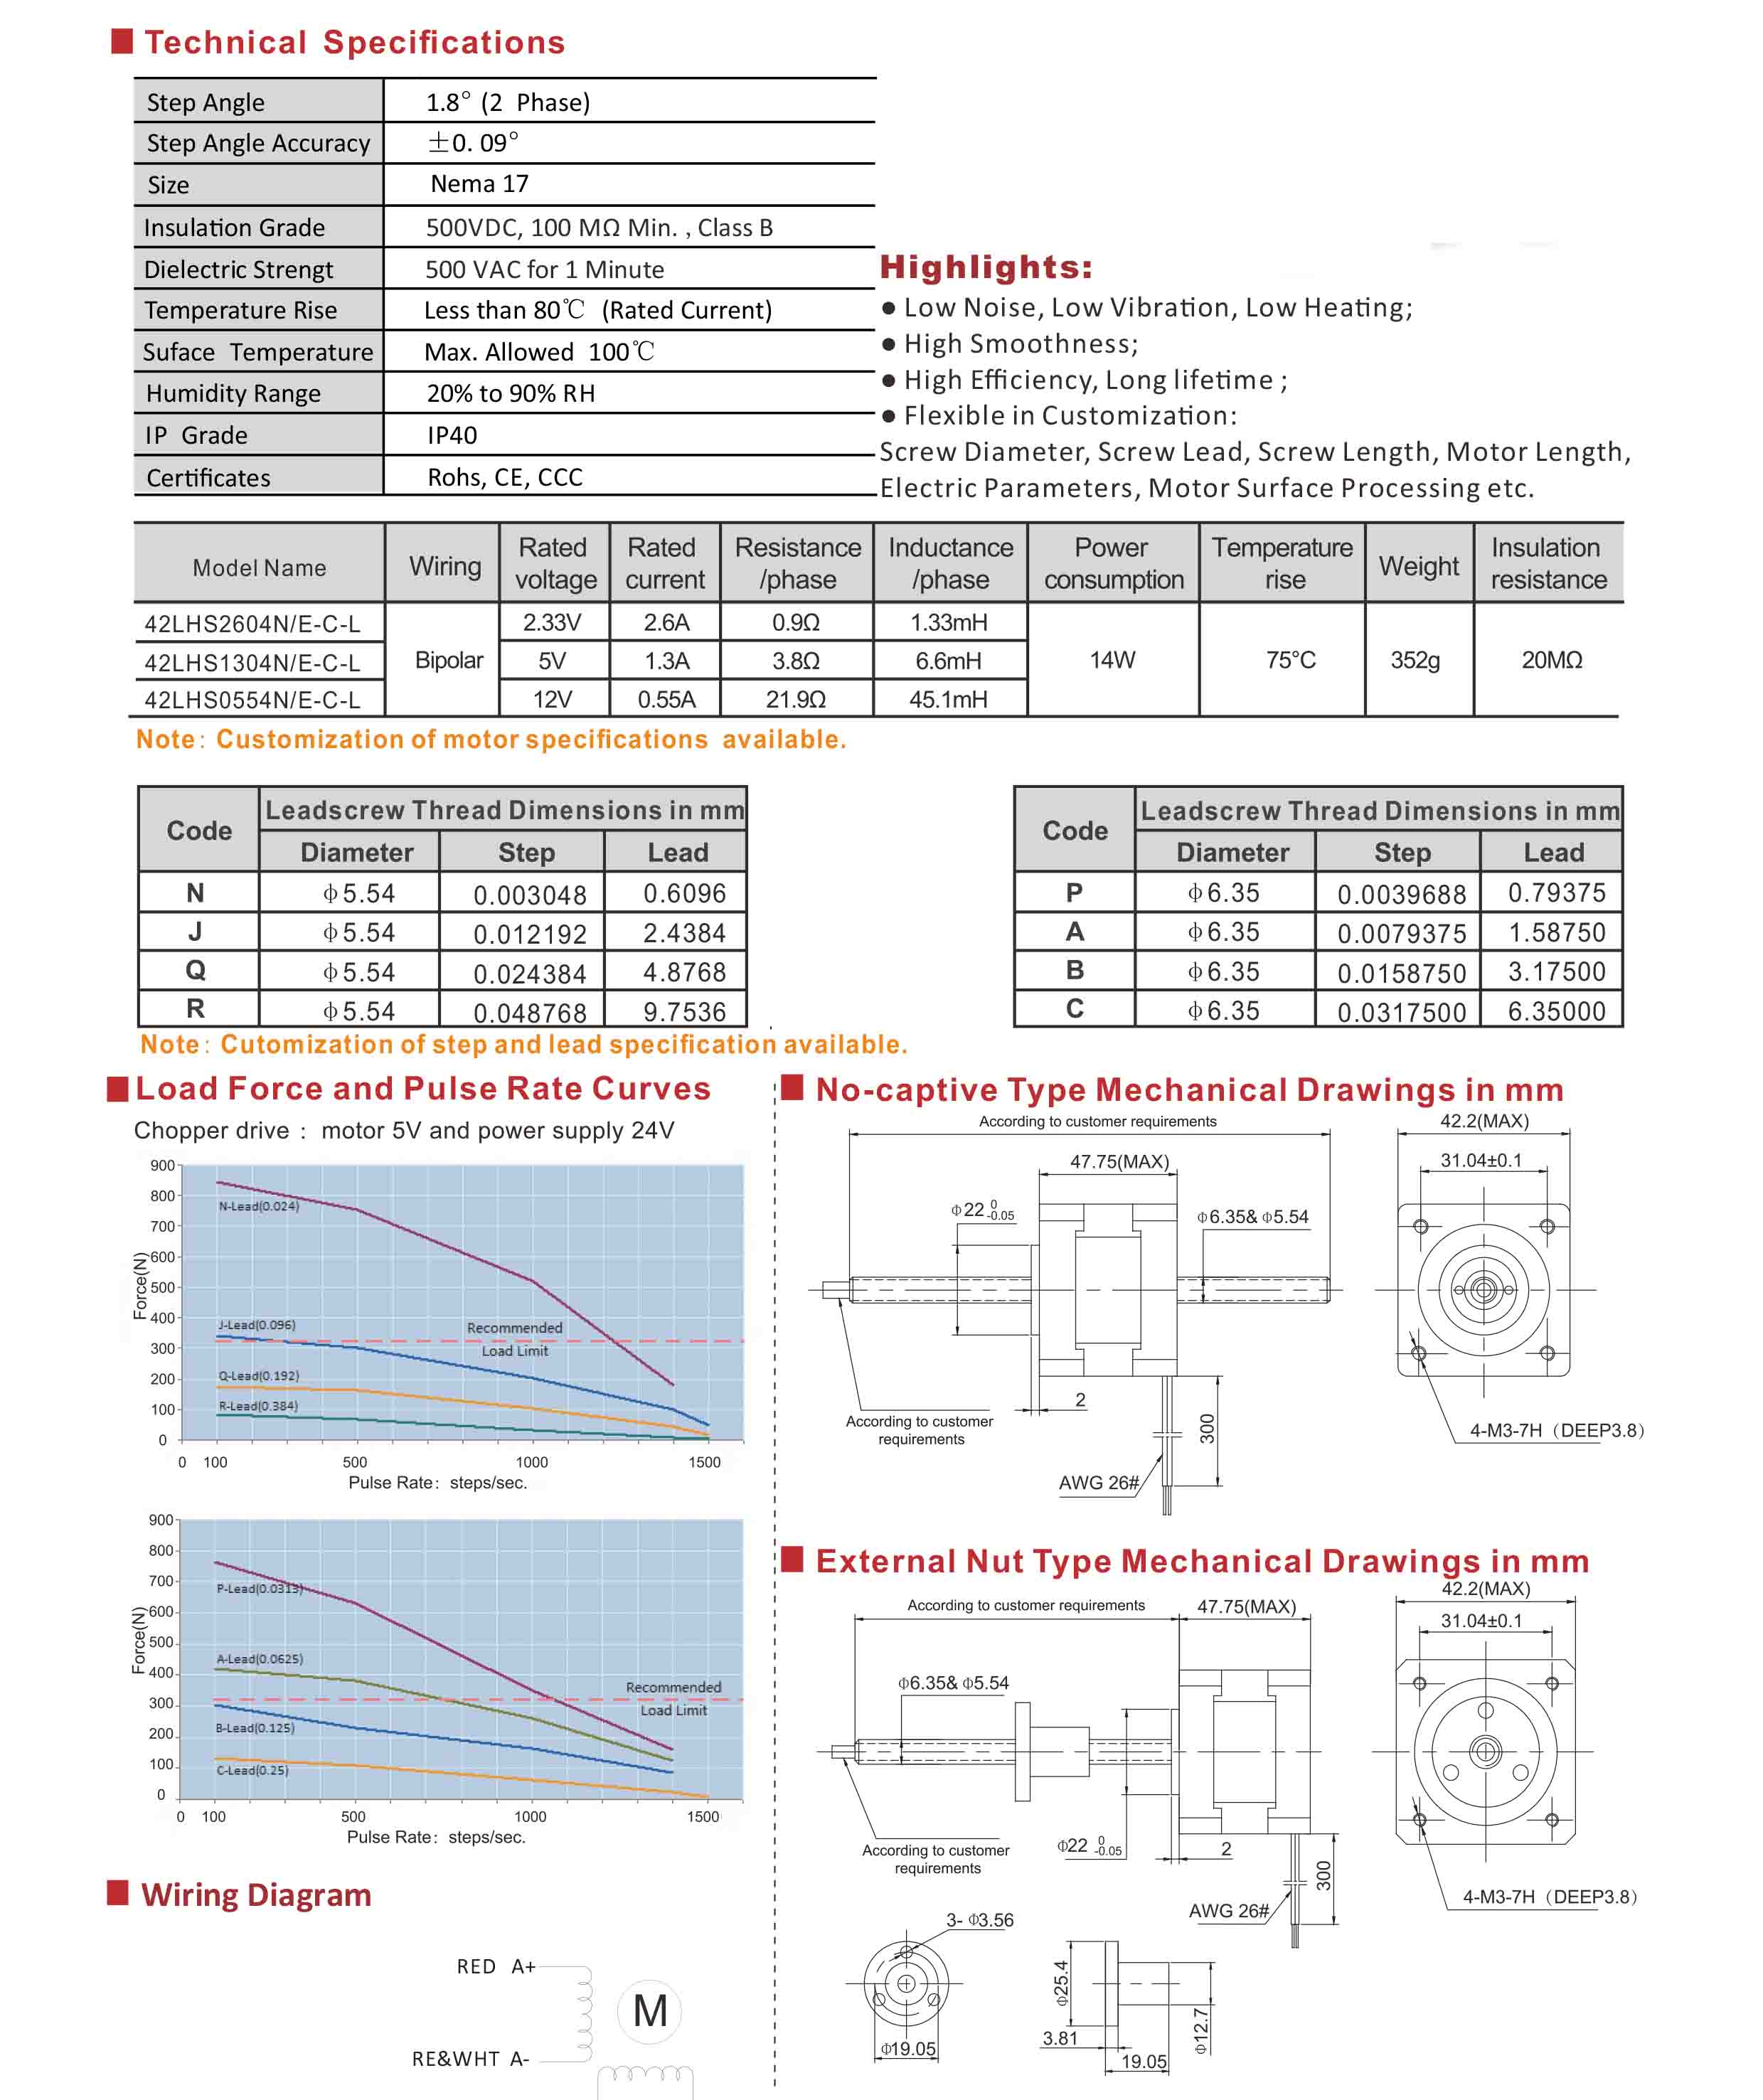 42LHS2604 1304 0554 Series Hybrid Linear Stepper Motors Data Sheet.jpg